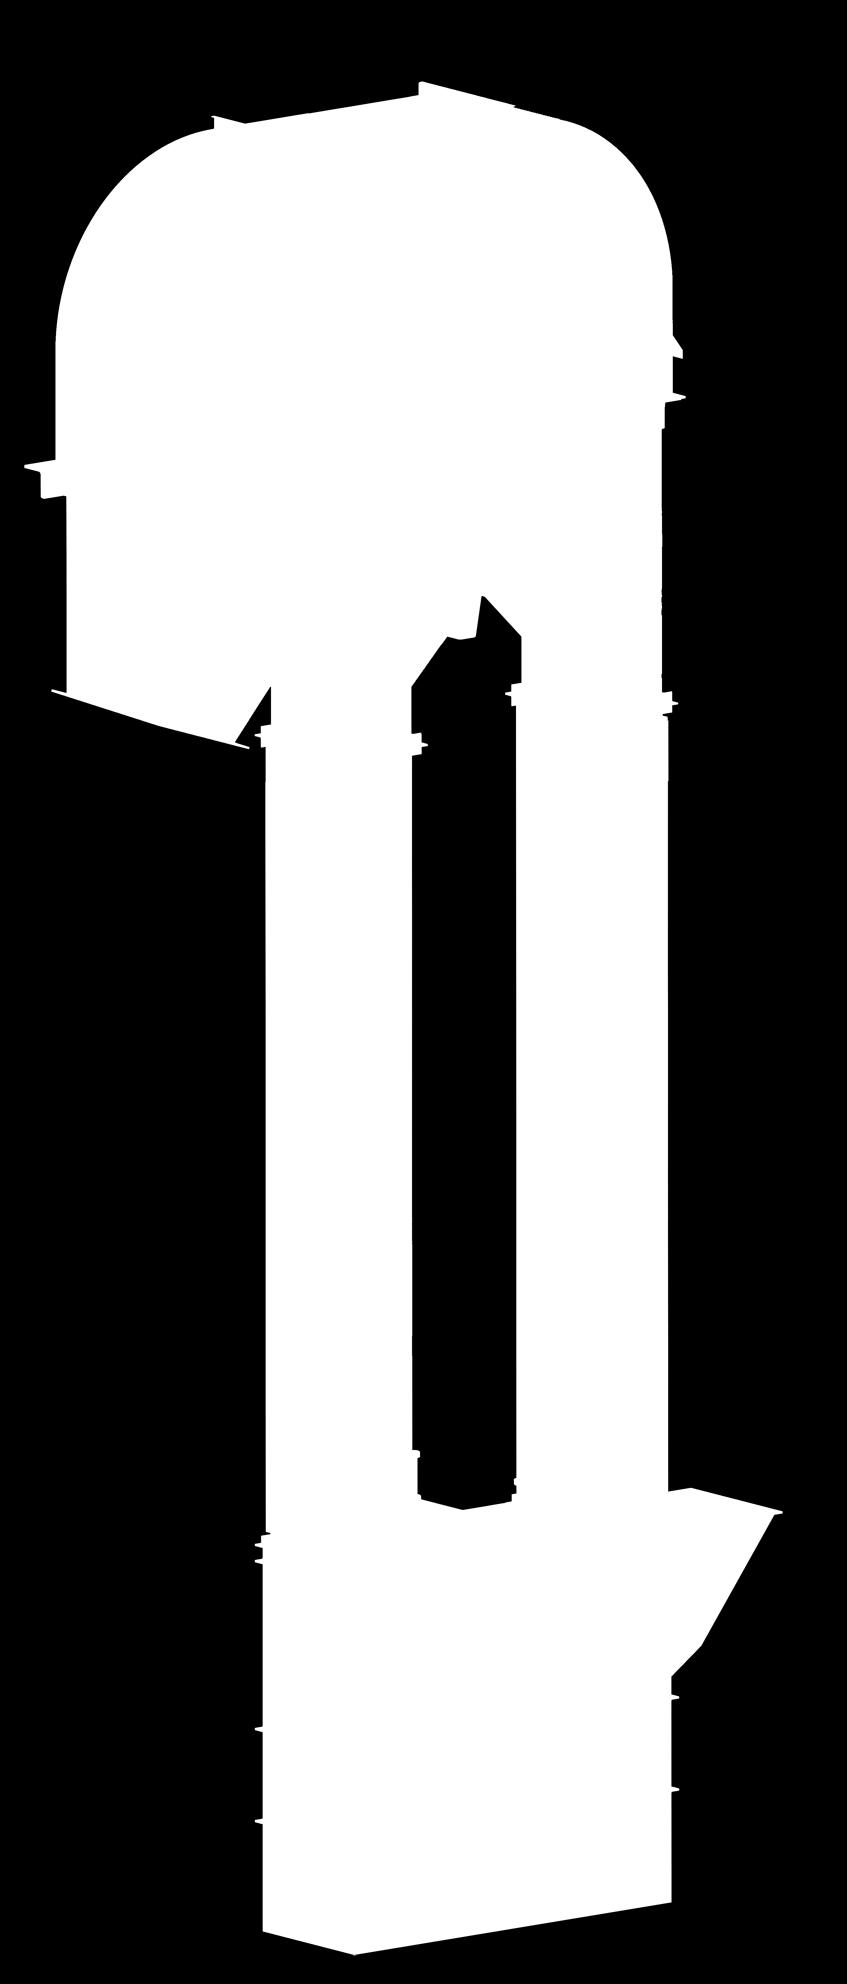 KOVALI ELEVATÖR BUCKET ELEVATOR BİLEKTECH Kovalı Elevatörü, yemin istenilen kapasitede hasarsız ve ekonomik bir şekilde yukarı doğru iletimini sağlar. Üst başlık çift parçalı imaldir.